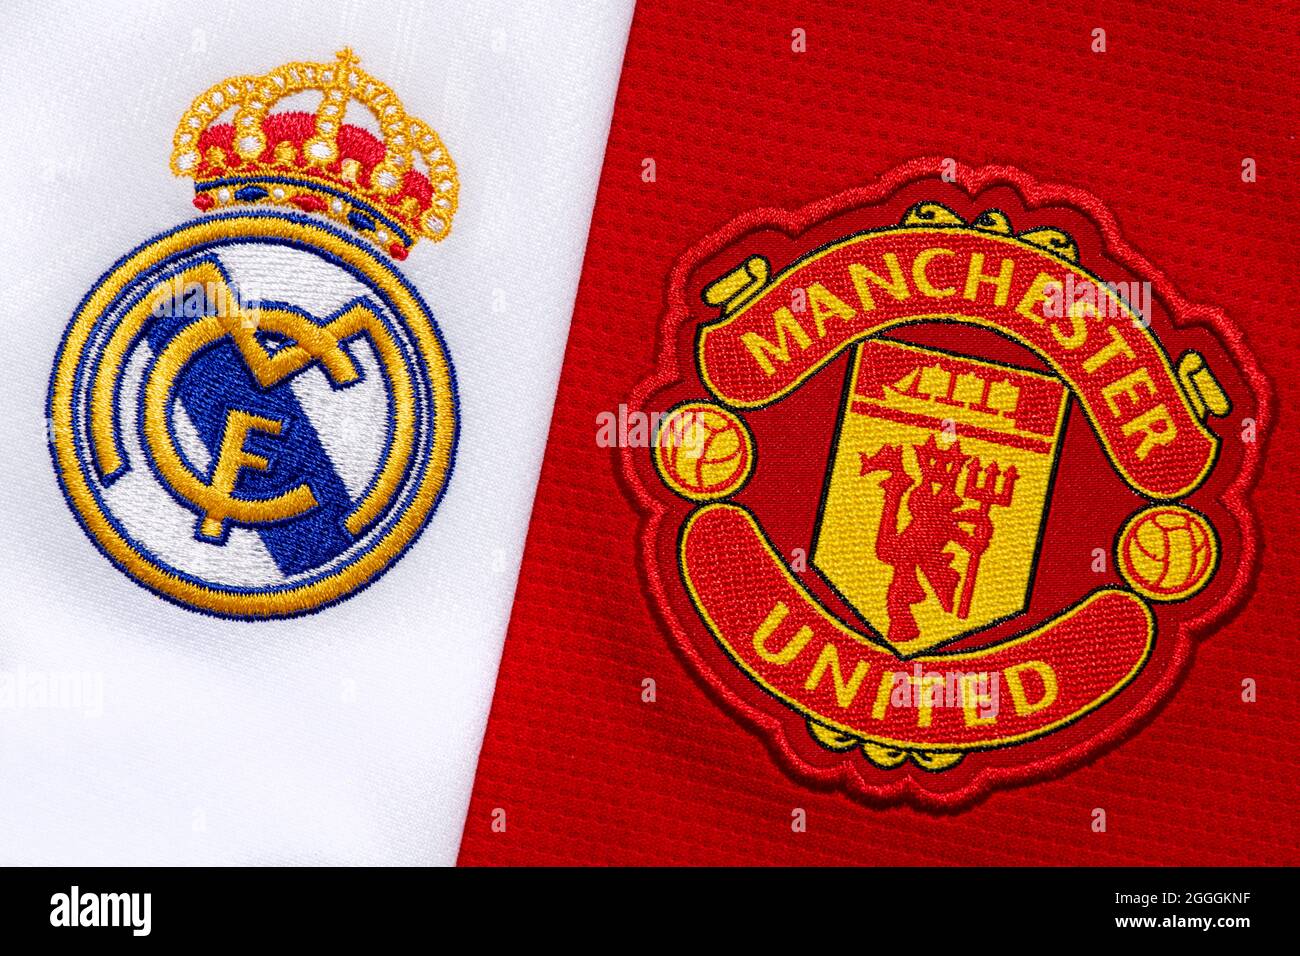 Primo piano dello stemma del club Manchester United & Real Madrid. Foto Stock